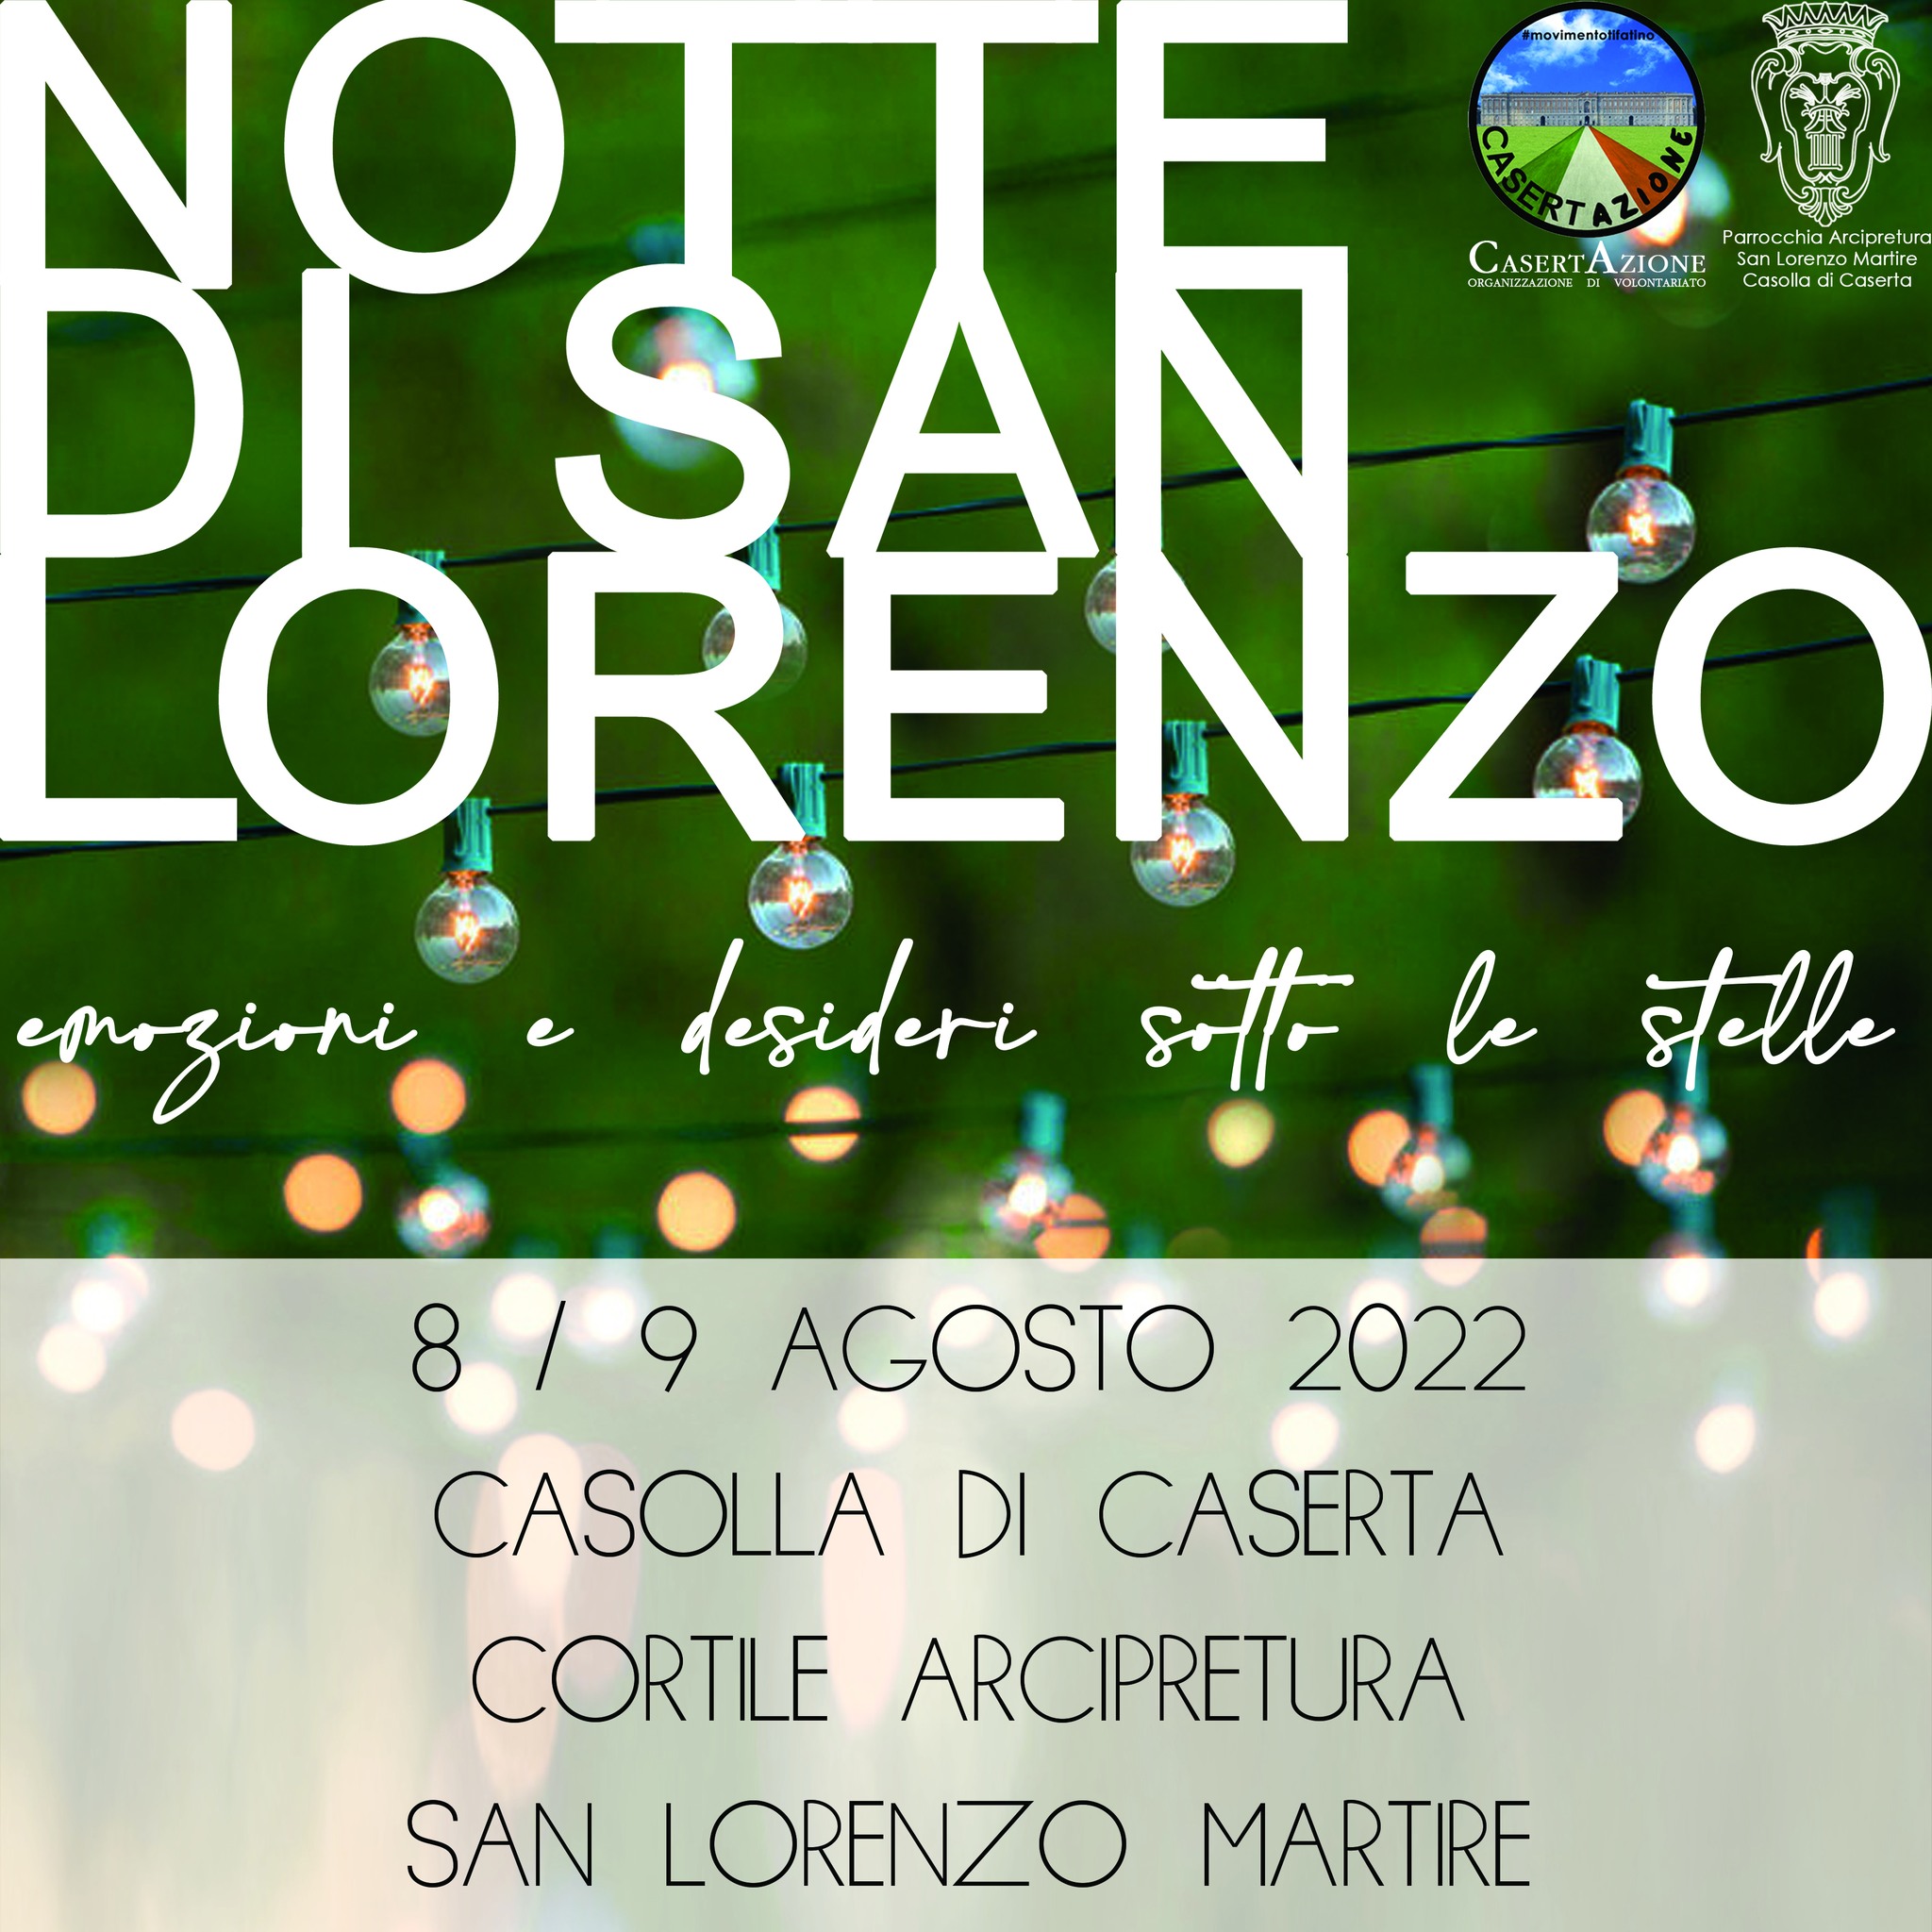 2 Notte San Lorenzo locandina NOTTE DI SAN LORENZO A CASOLLA, IL PROGRAMMA